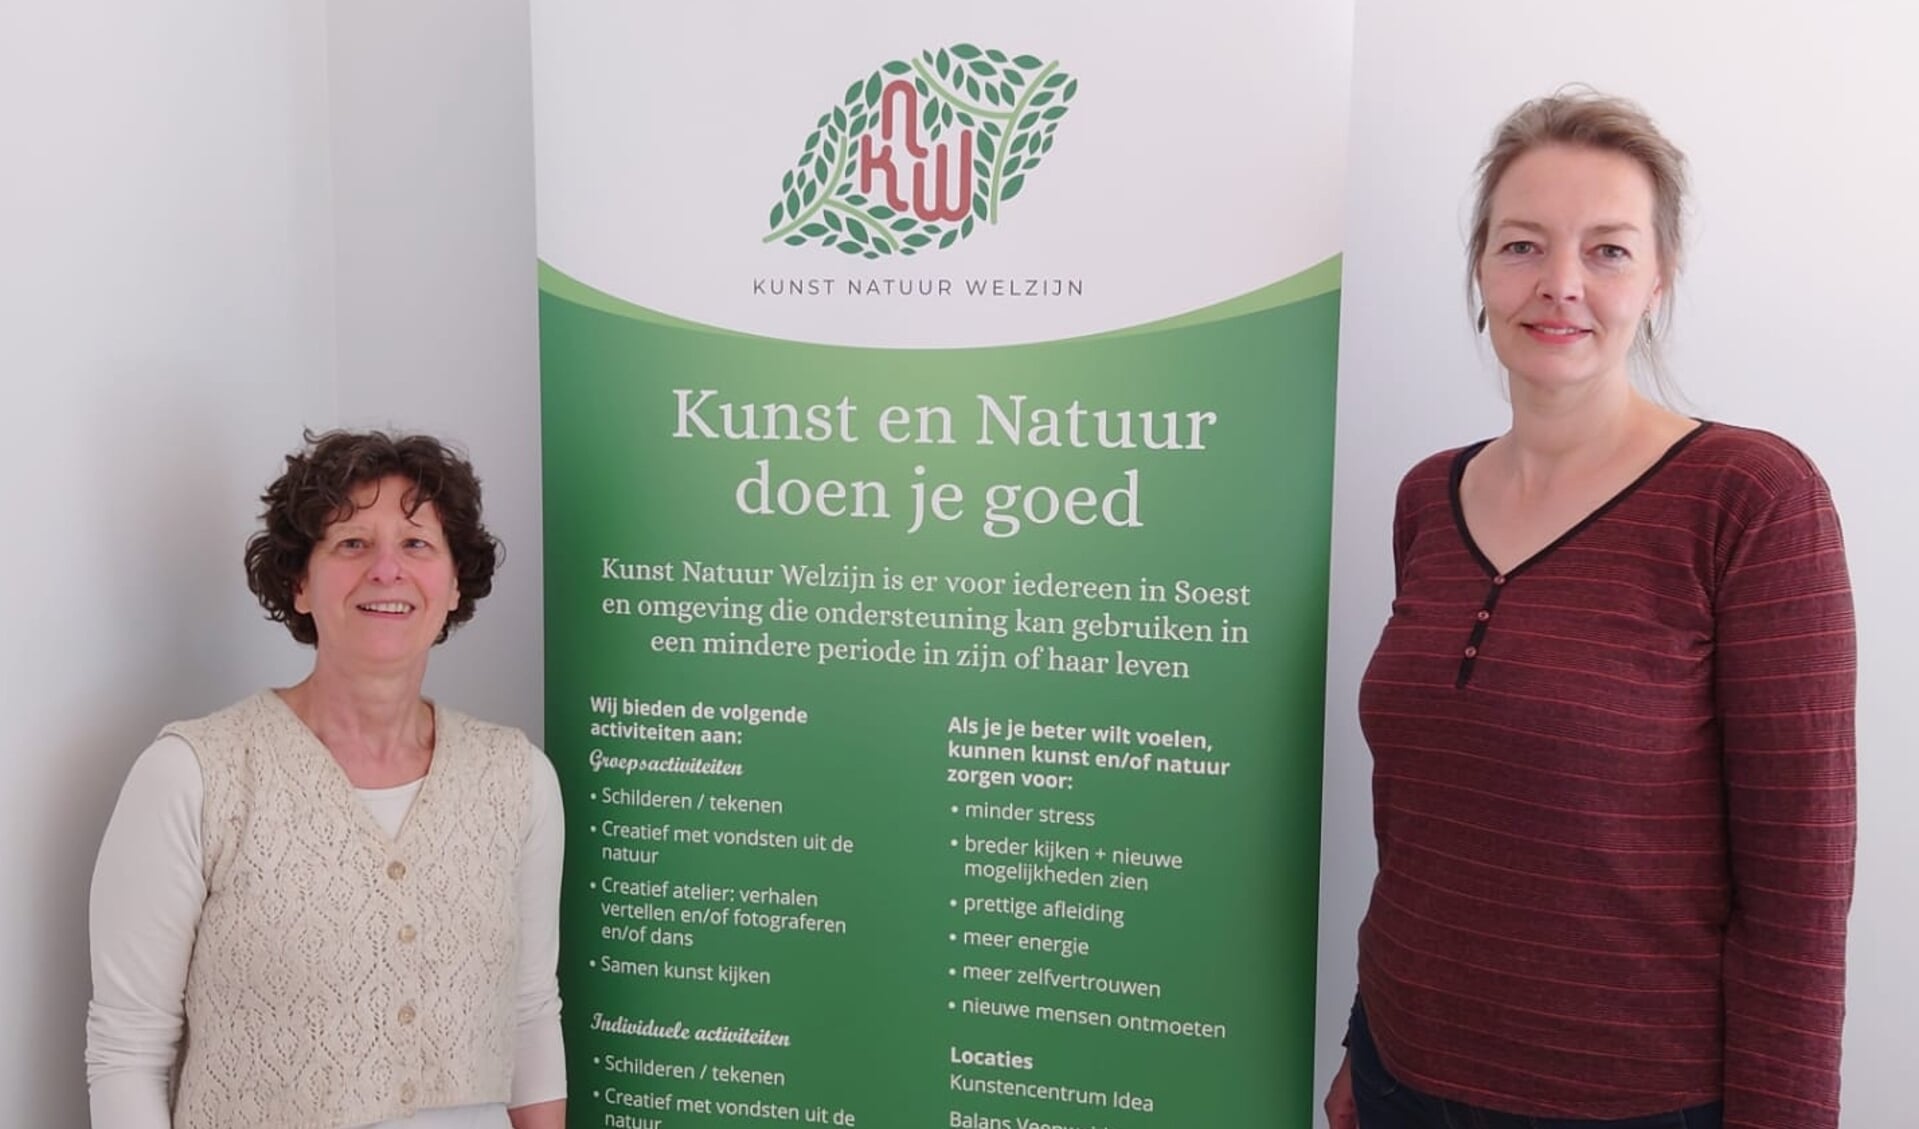 De initiatiefnemers van Kunst Natuur Welzijn. Links Angela van Iersel, rechts Floor de Graaf